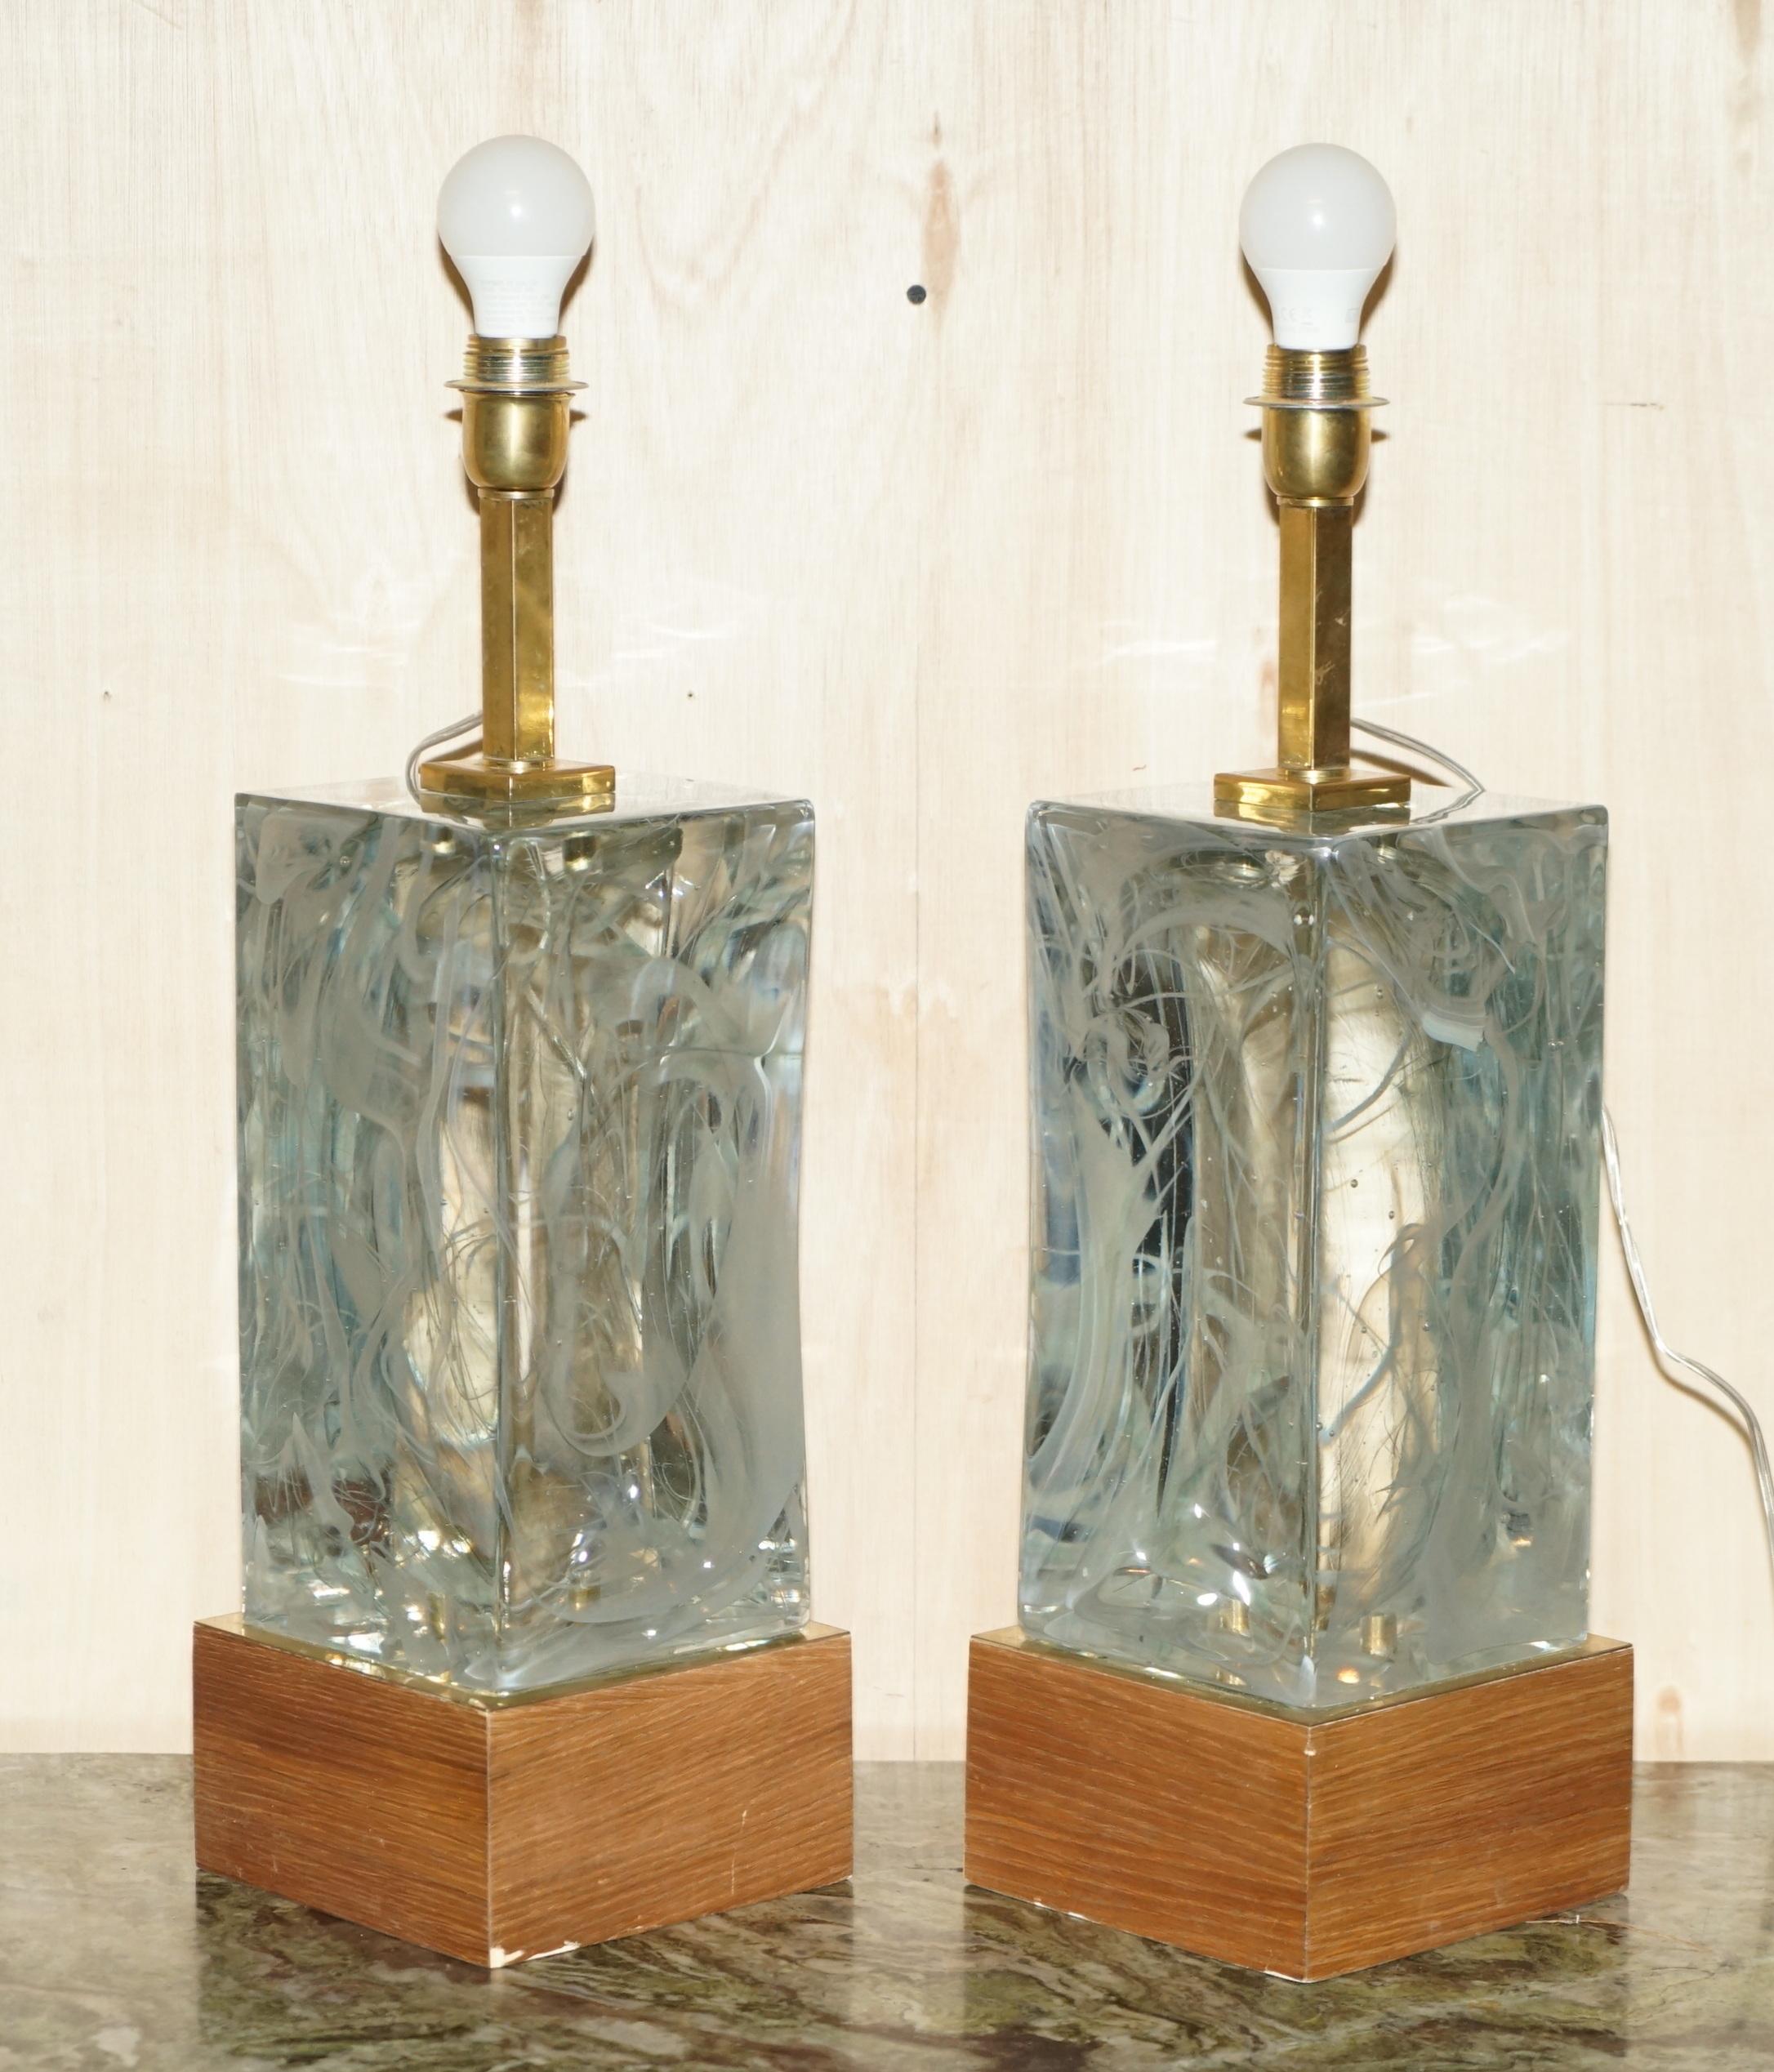 Nous avons le plaisir de vous proposer à la vente cette paire de lampes de table originales en verre massif de Murano avec une finition en marbre.

Ces lampes font partie d'une grande sélection de lampes de Murano qui m'ont été livrées directement